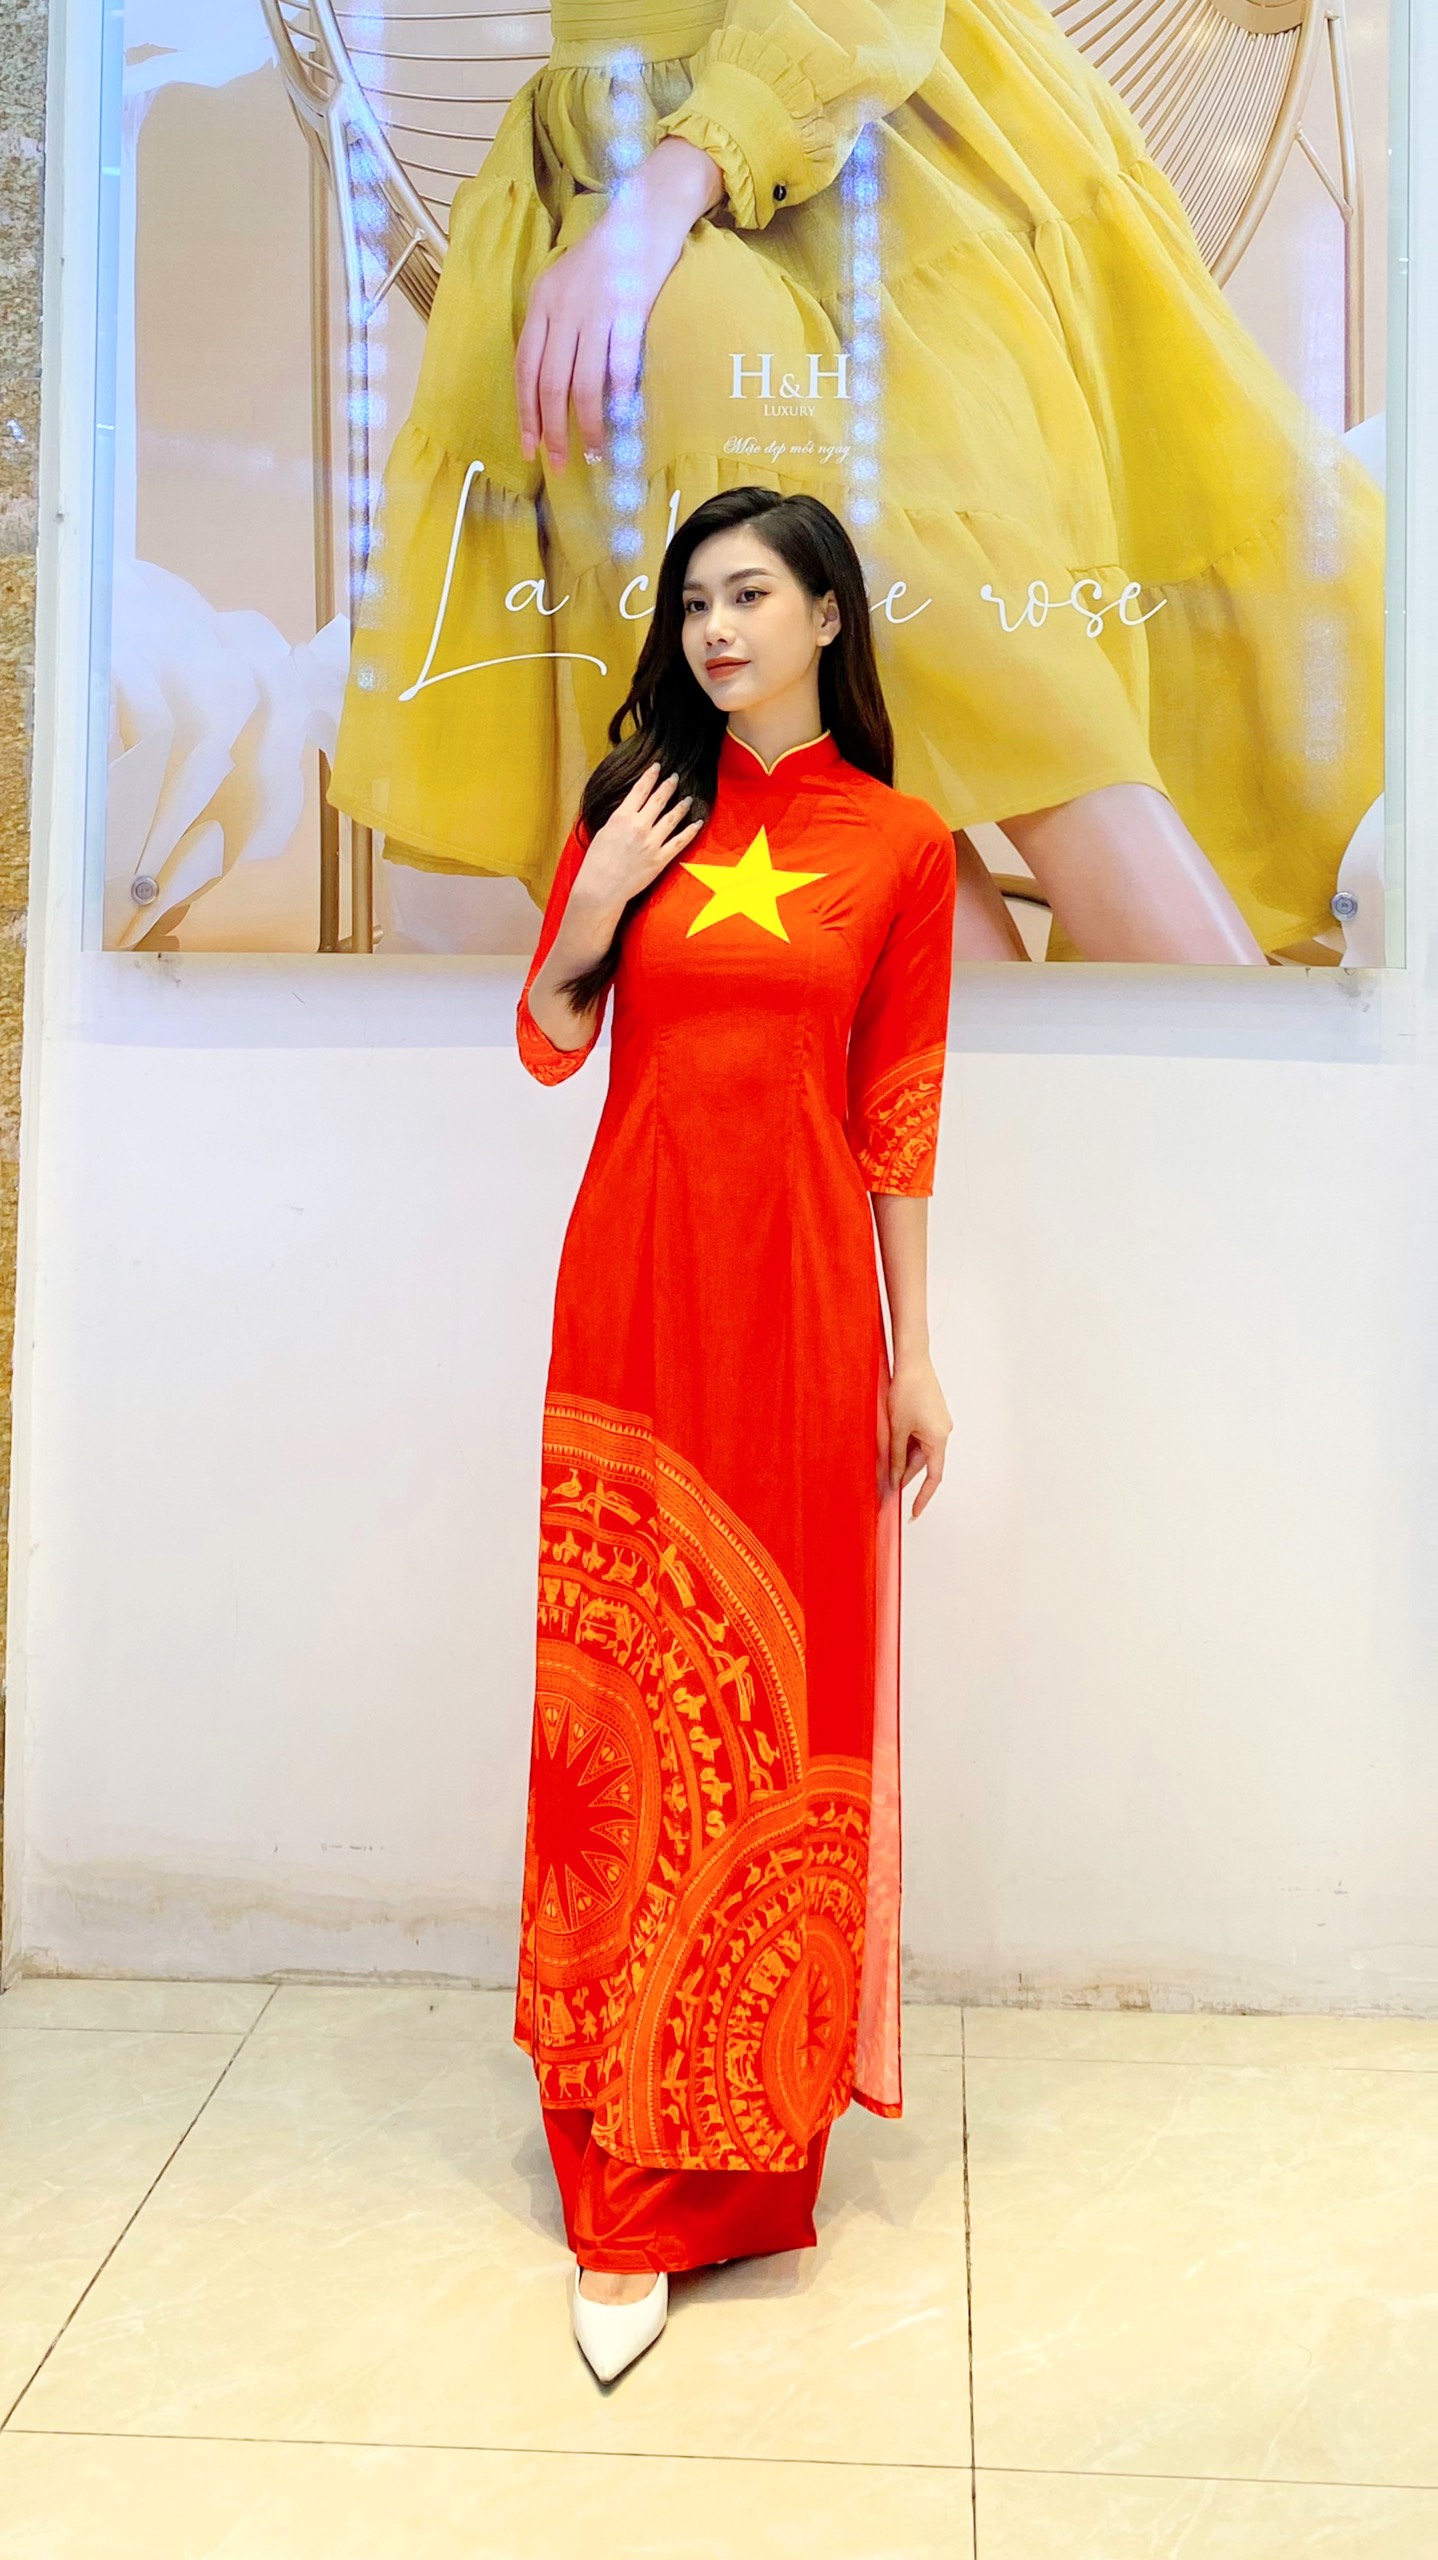 Áo dài lụa: Áo dài lụa đã trở thành biểu tượng của phong cách thời trang truyền thống của người Việt. Hãy thưởng thức những hình ảnh về những bộ áo dài lụa tuyệt đẹp được mặc bởi người phụ nữ Việt Nam và hiểu thêm về một phần văn hóa của đất nước.